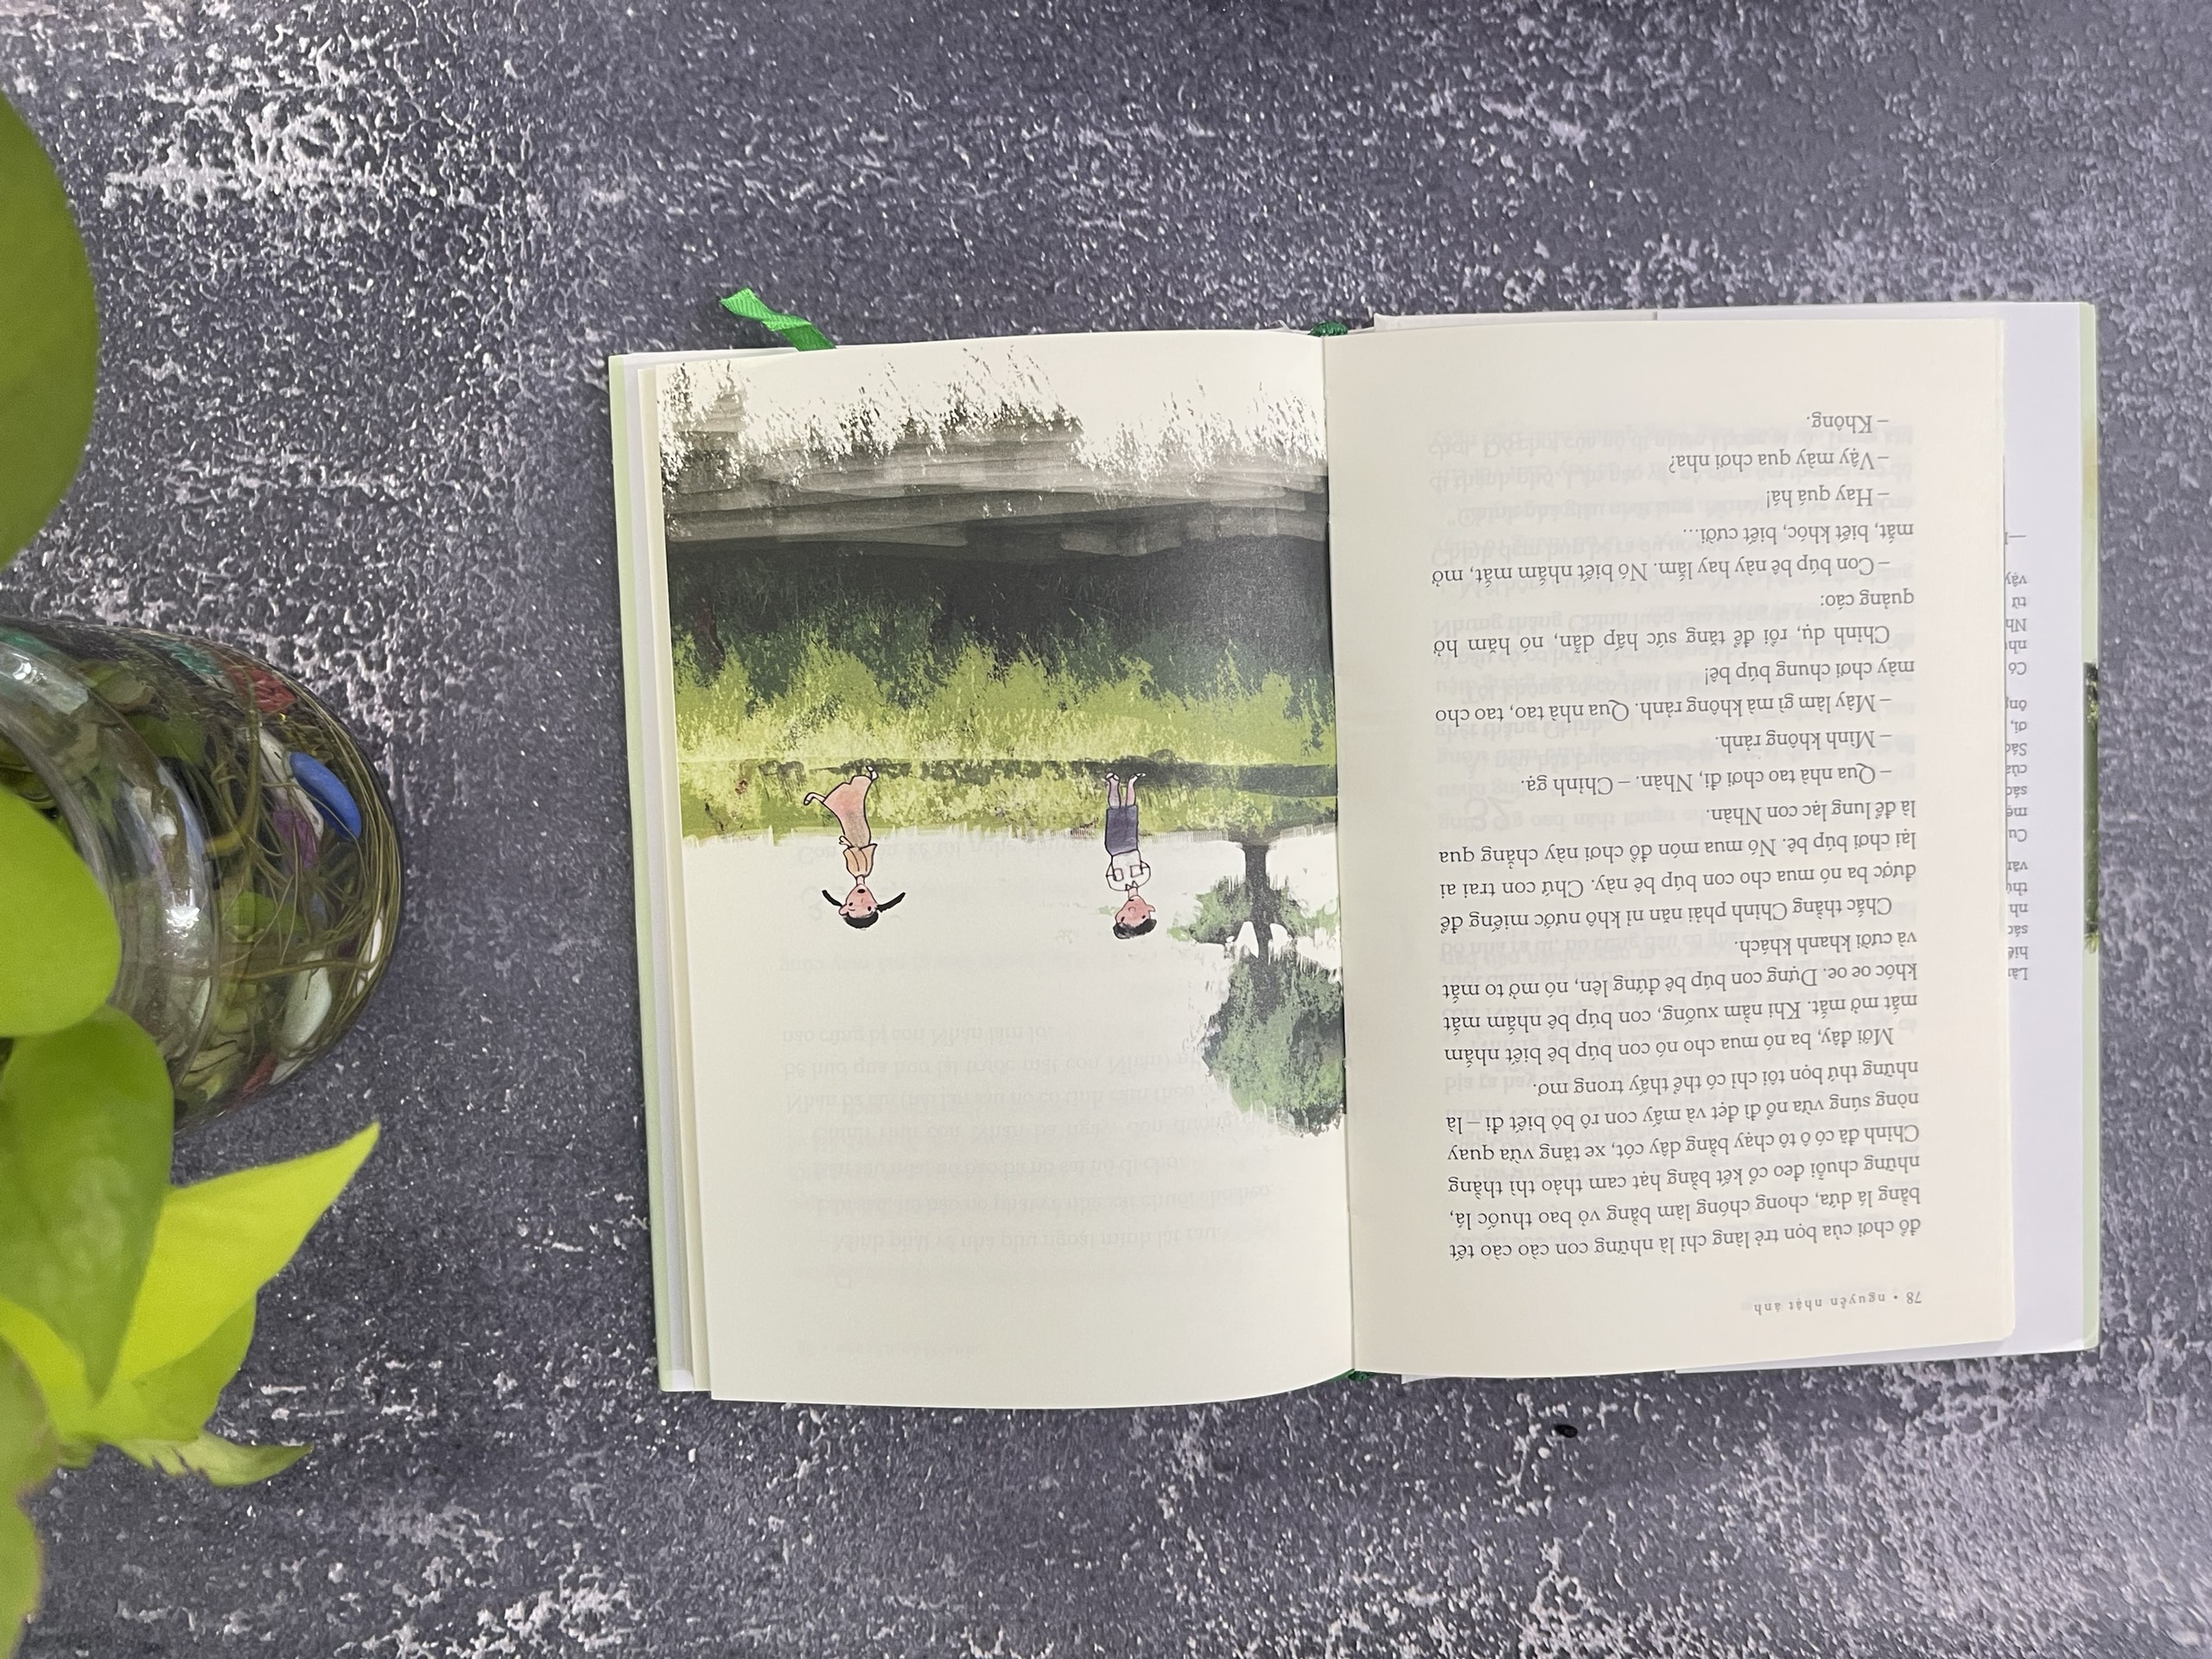 Sách mùa hè không tên - bìa cứng - Nguyễn Nhật Ánh ( tặng bookmark ) NXBT